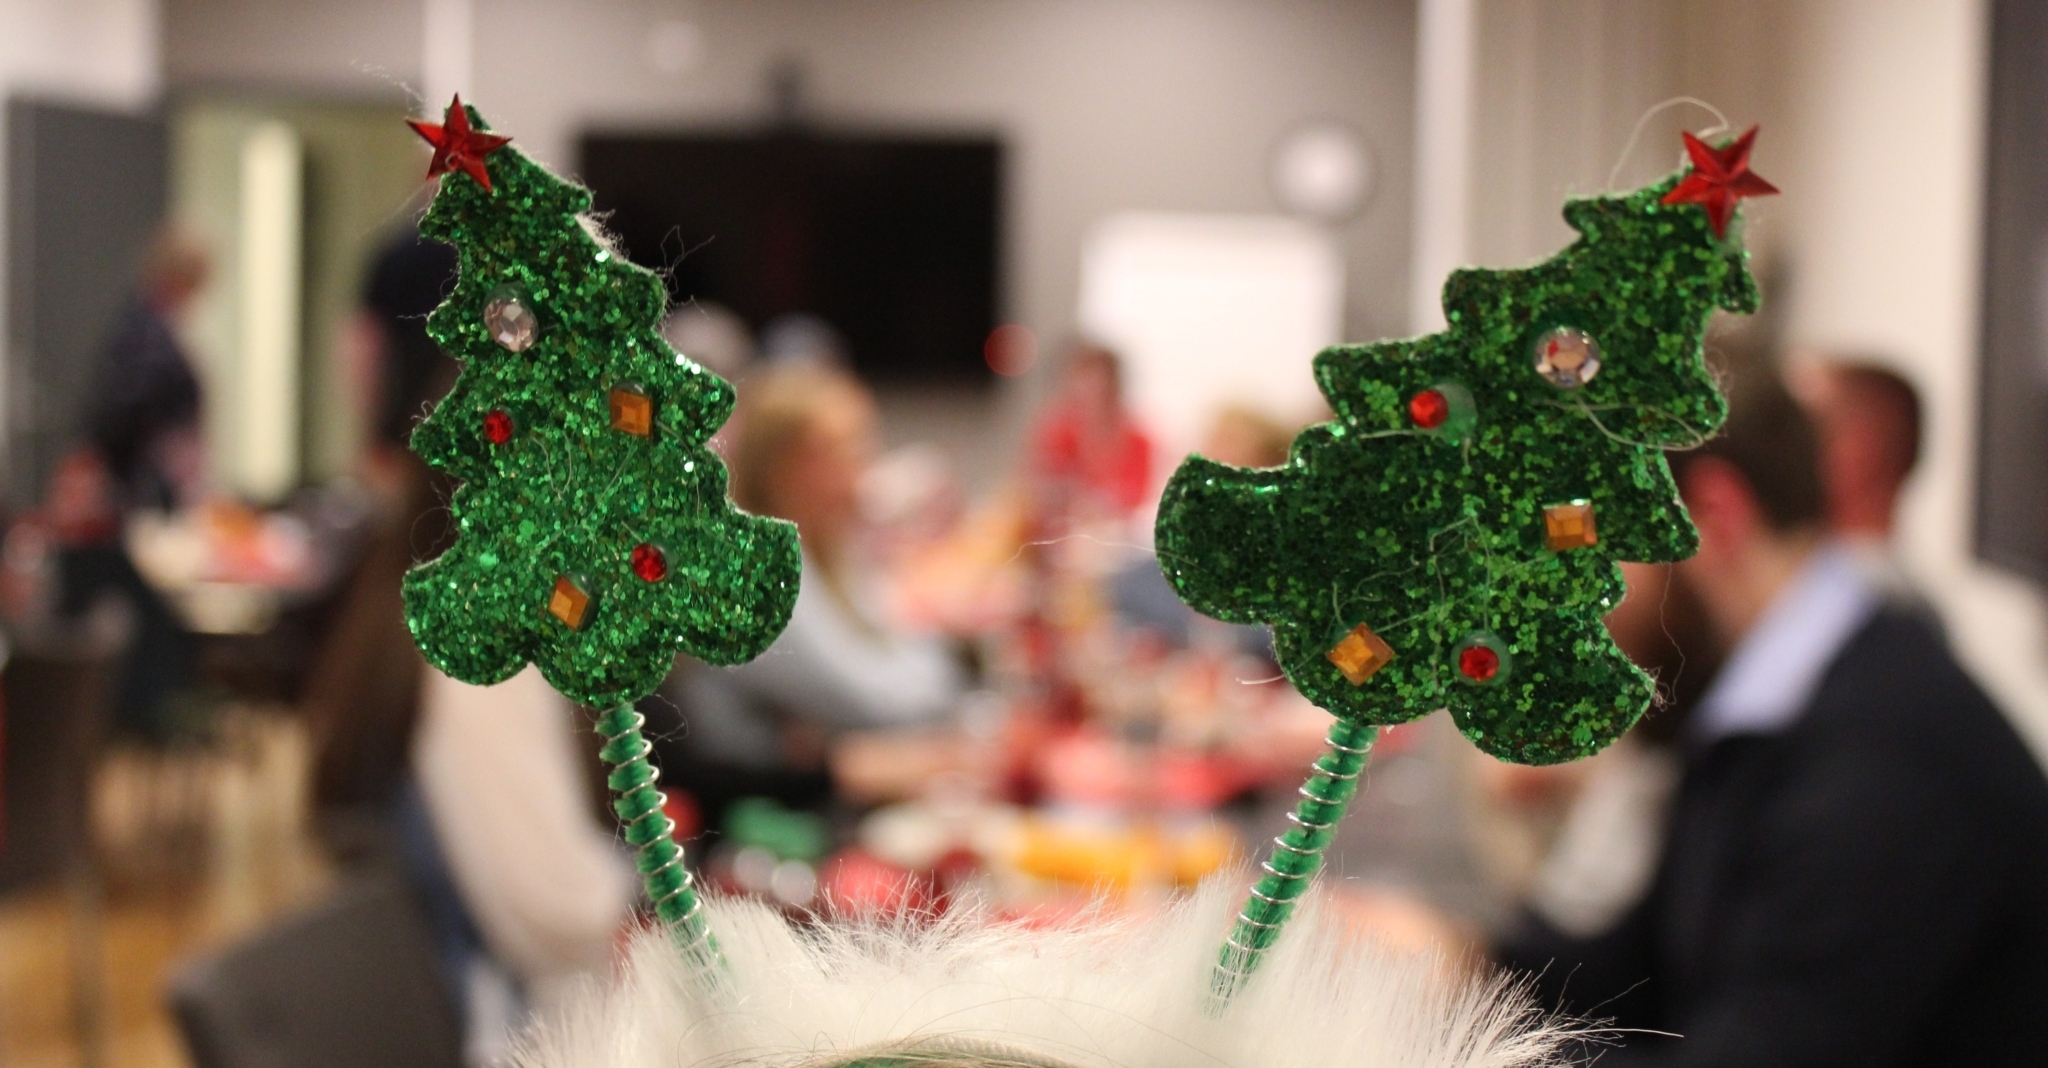 I fokus er en hårbøyle med to glitrende juletrær på. I bakgrunnen ser vi medlemmer som spiser grøt